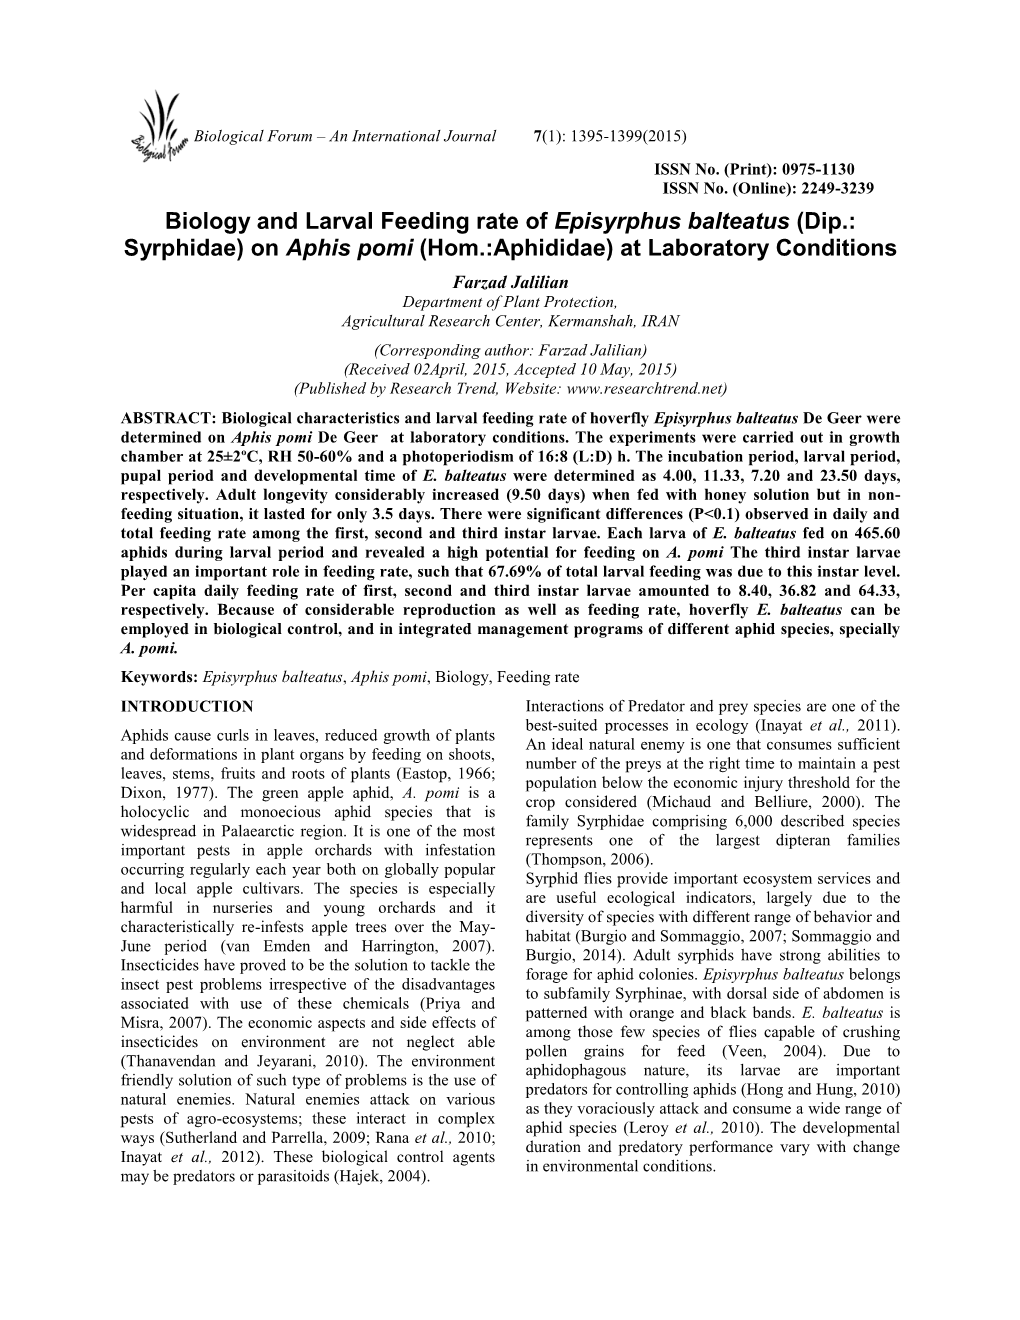 Biology and Larval Feeding Rate of Episyrphus Balteatus